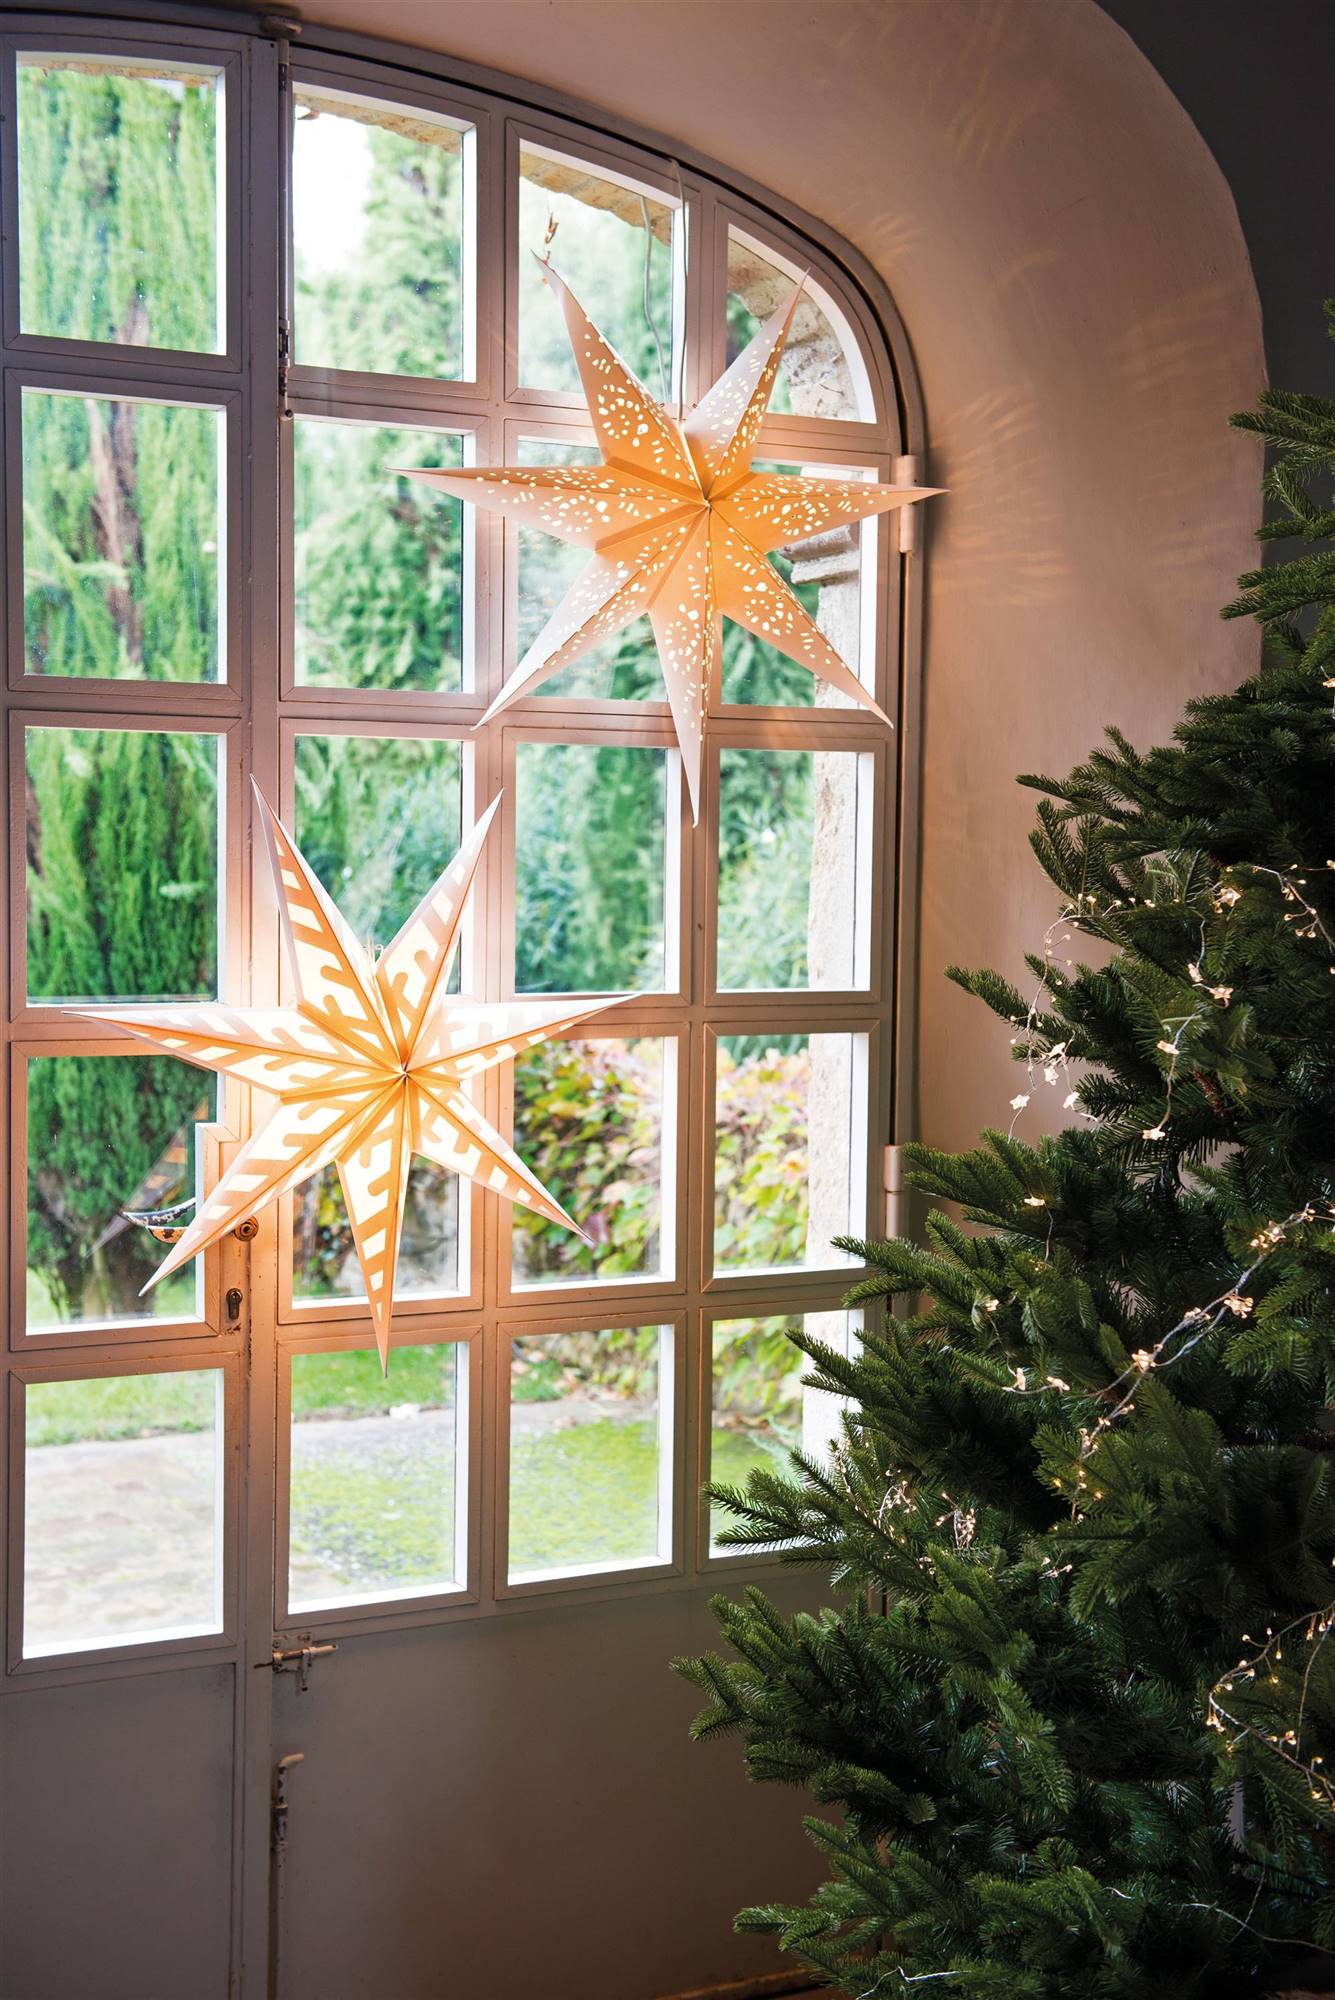 Iluminación de Navidad con estrellas de papel en la ventana.